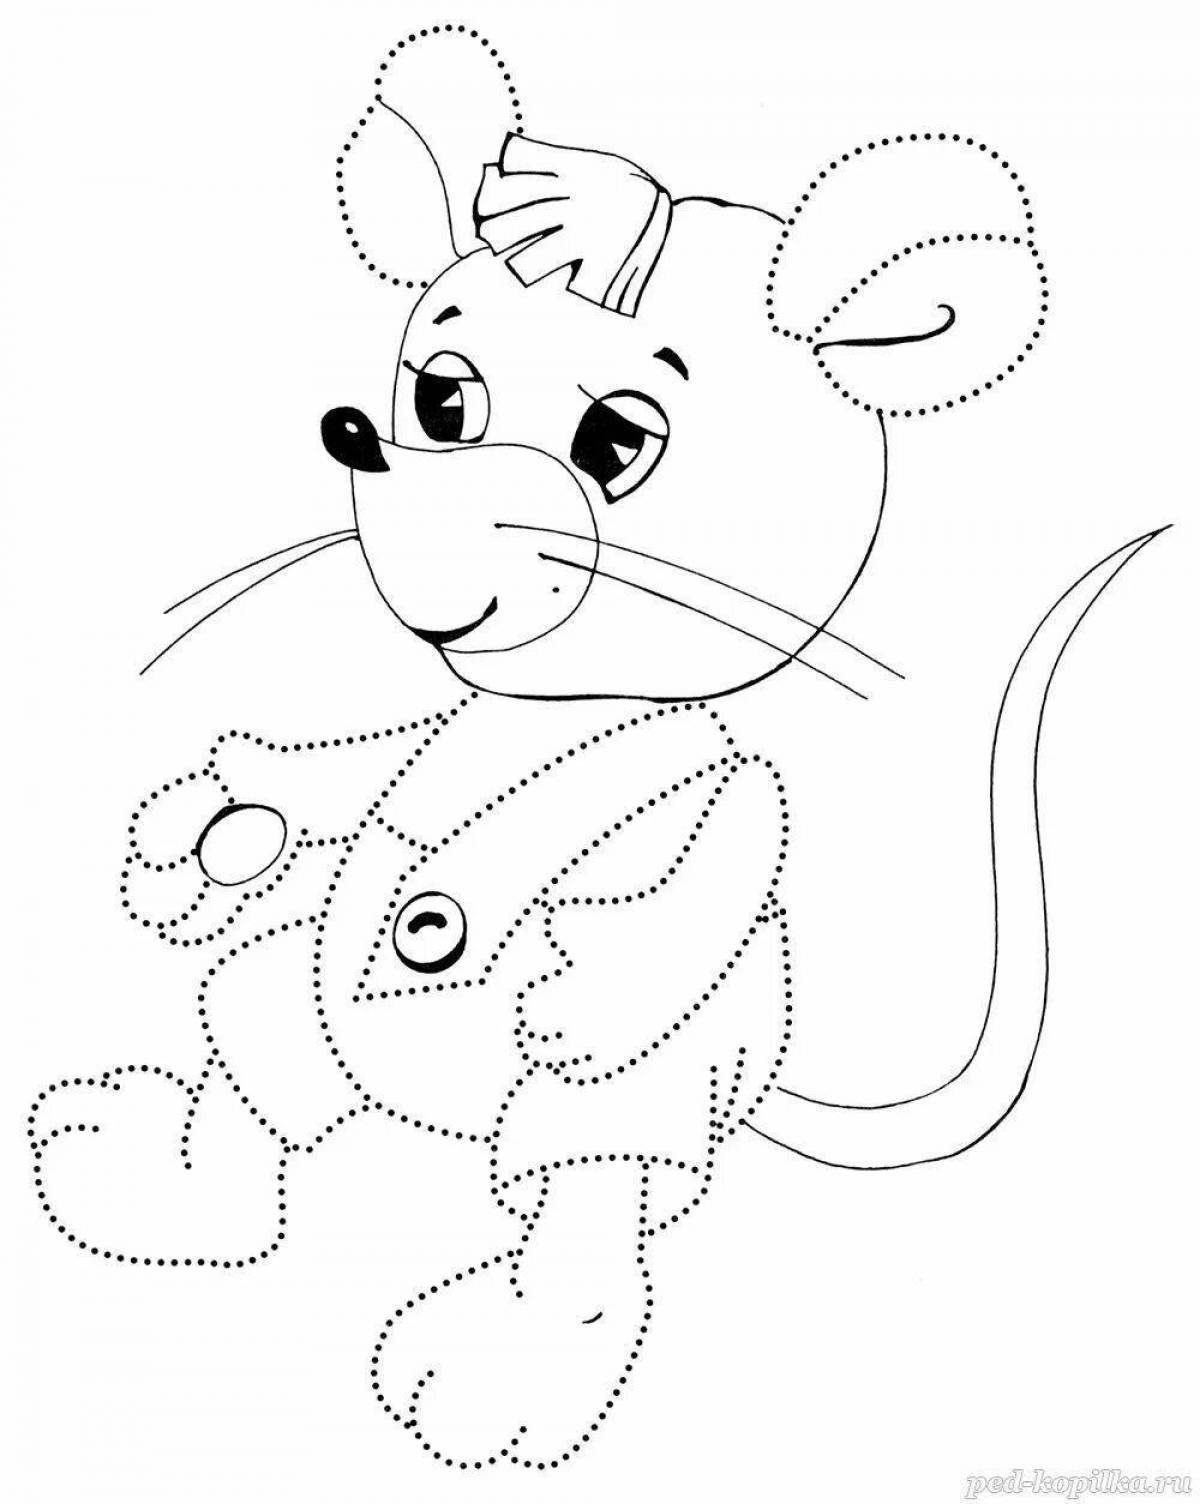 Увлекательная раскраска толстого мышонка